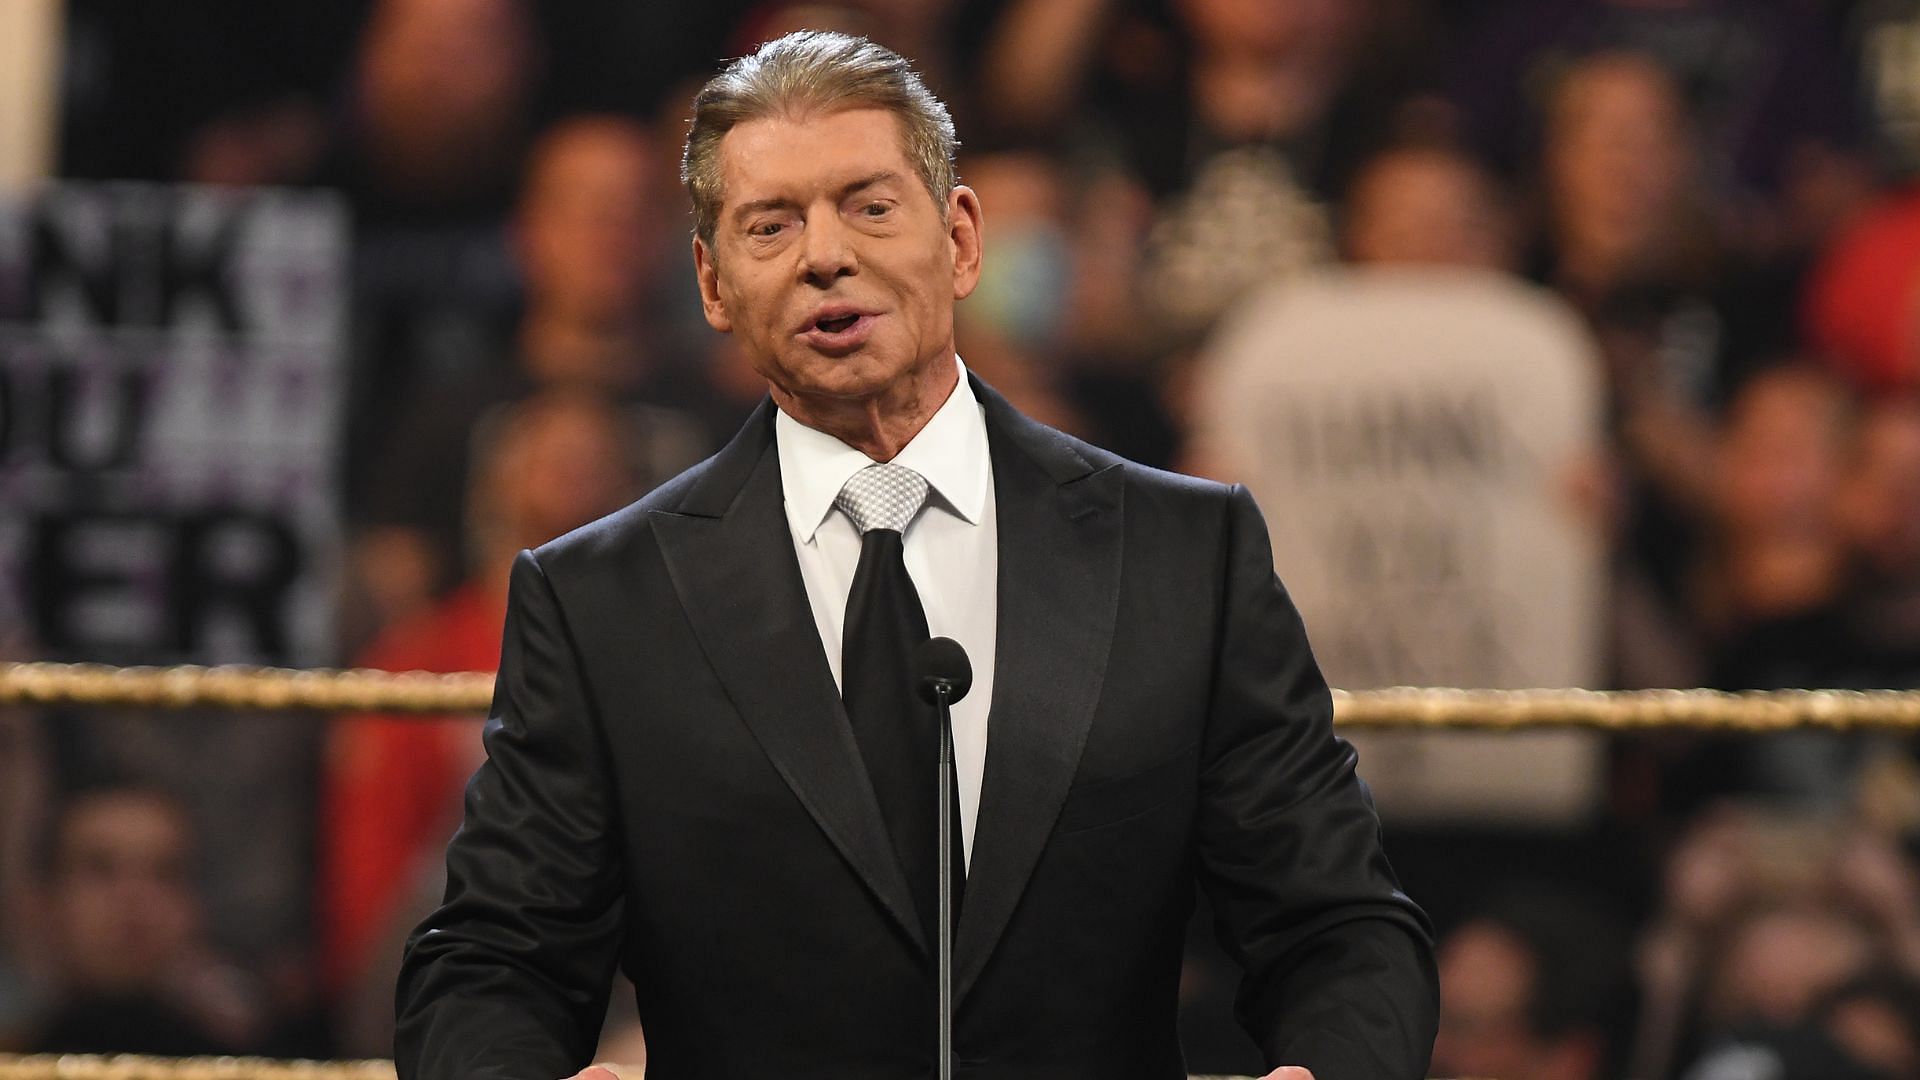 WWE Executive Chairman Vince McMahon